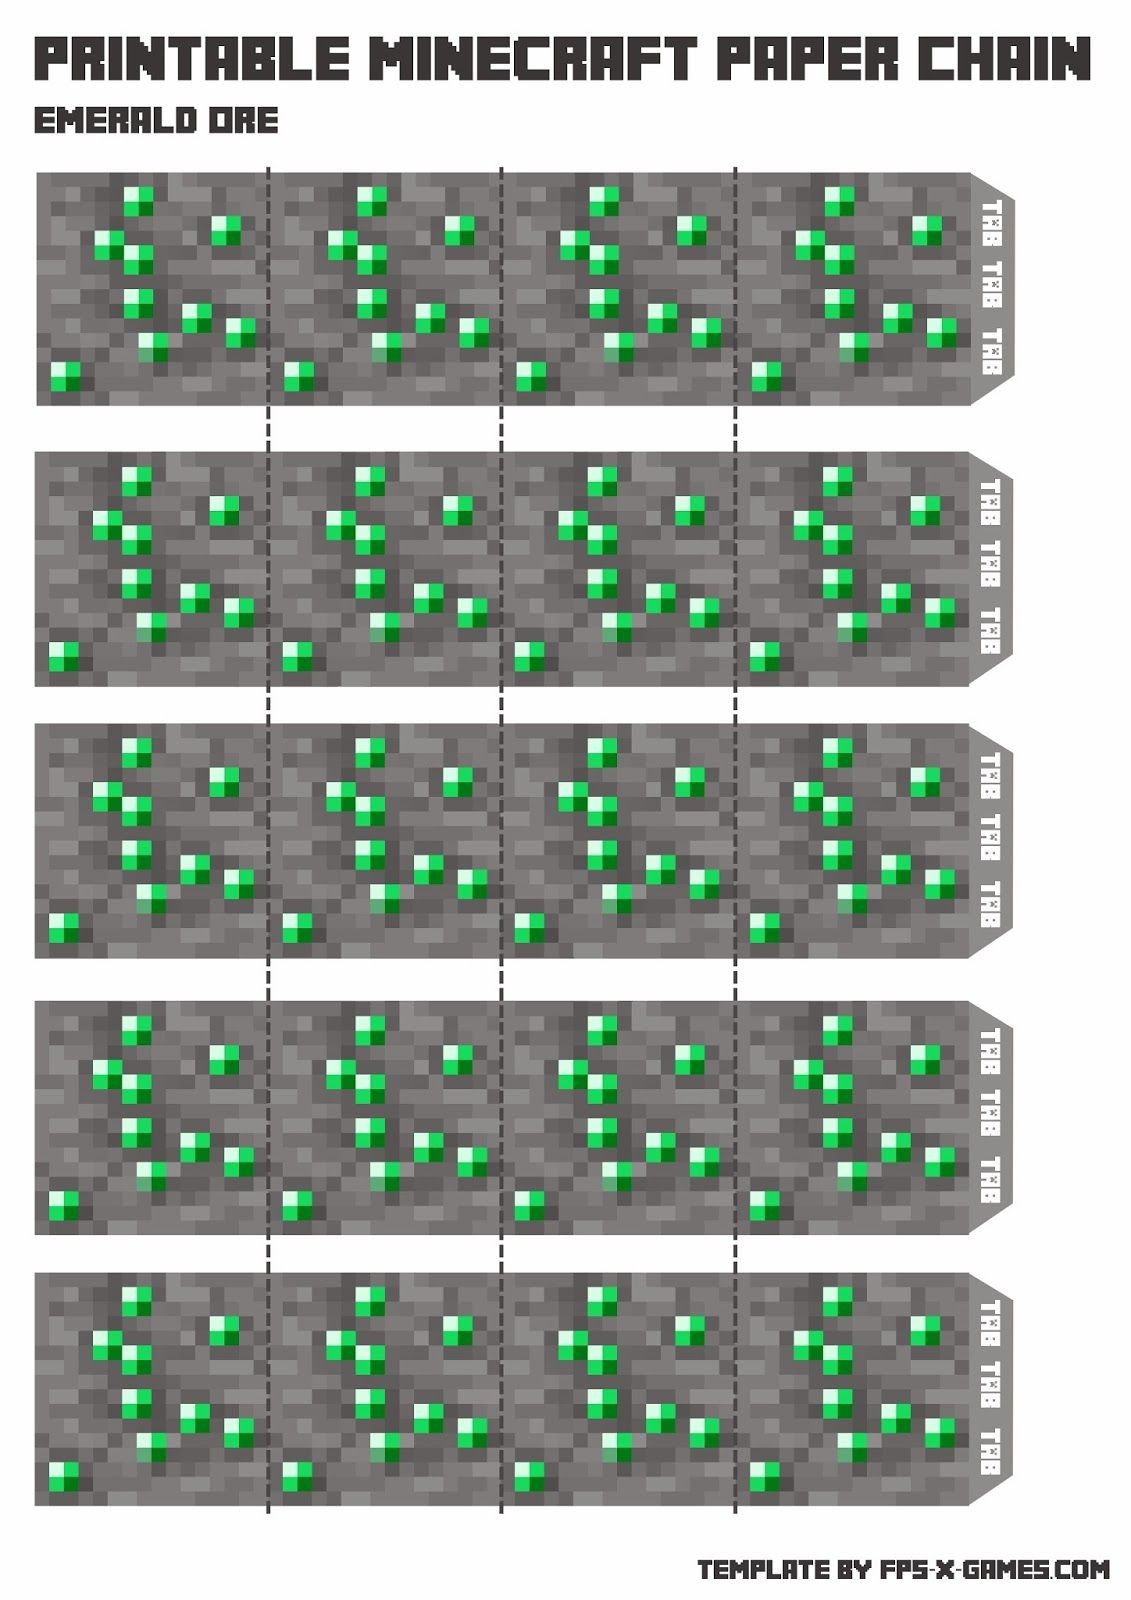 Minecraft Papercraft Grass Minecraft Papercraft Chain Emerald ore